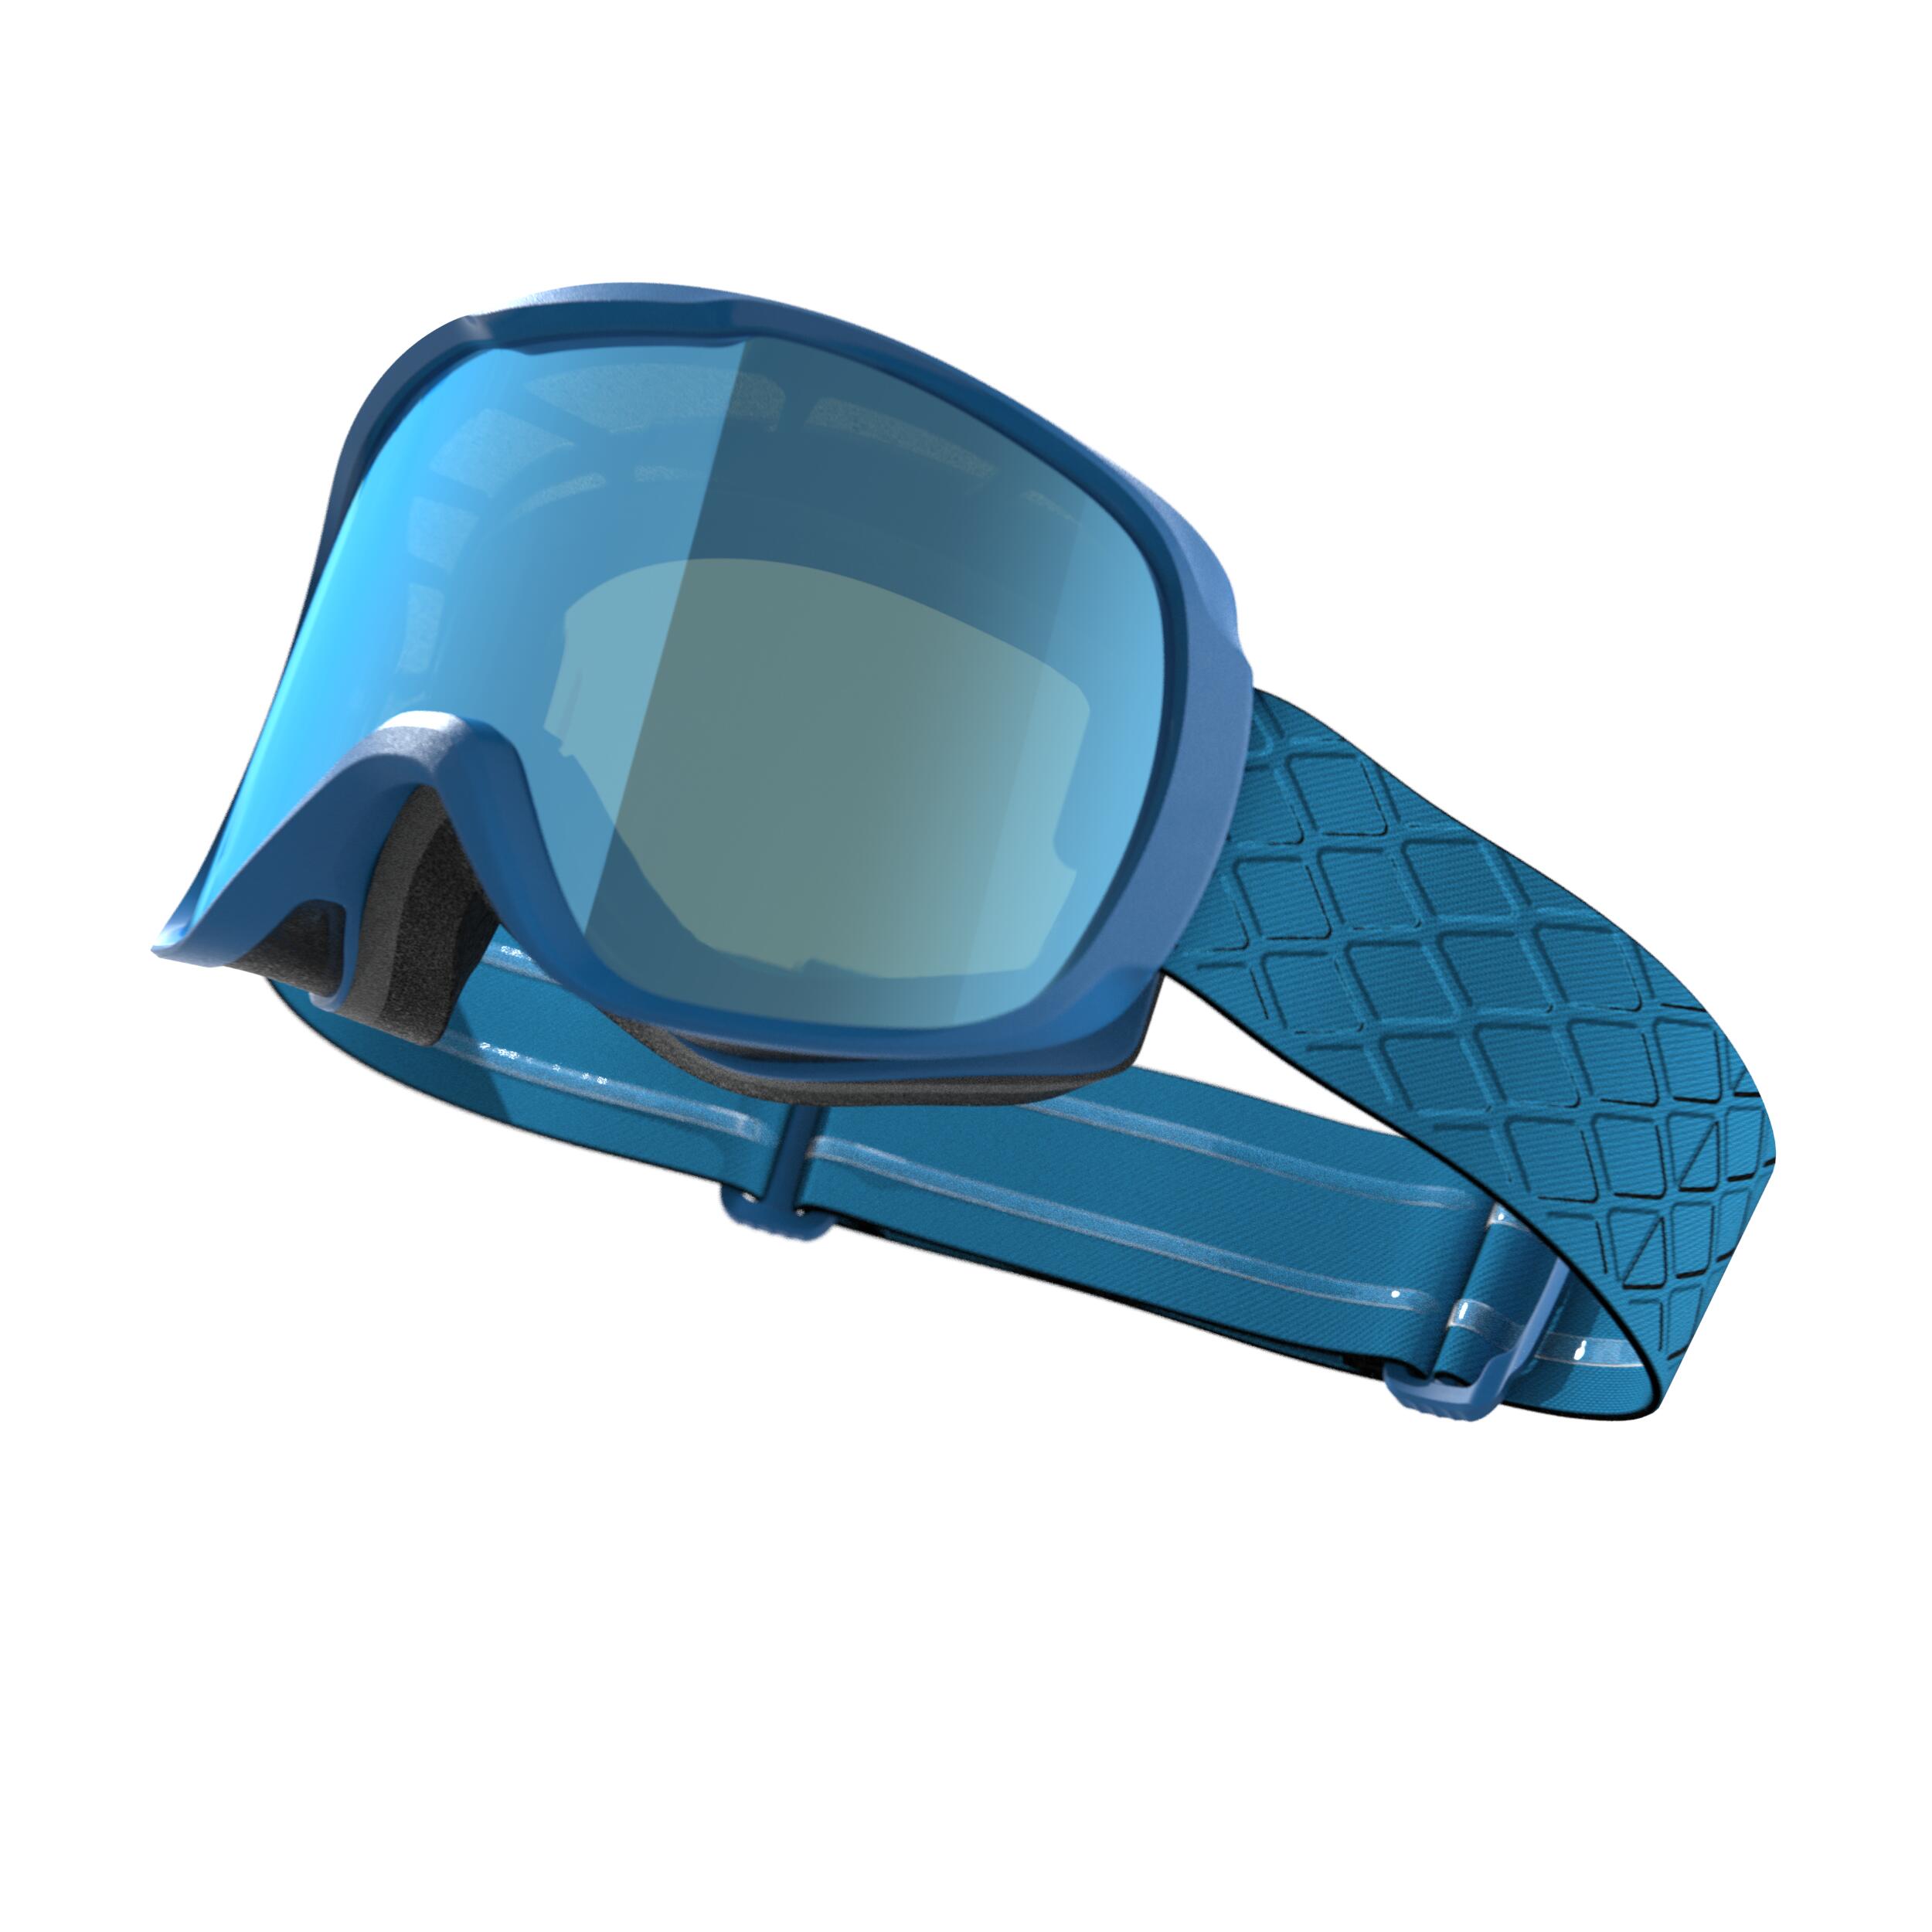 Men's Ski Goggles